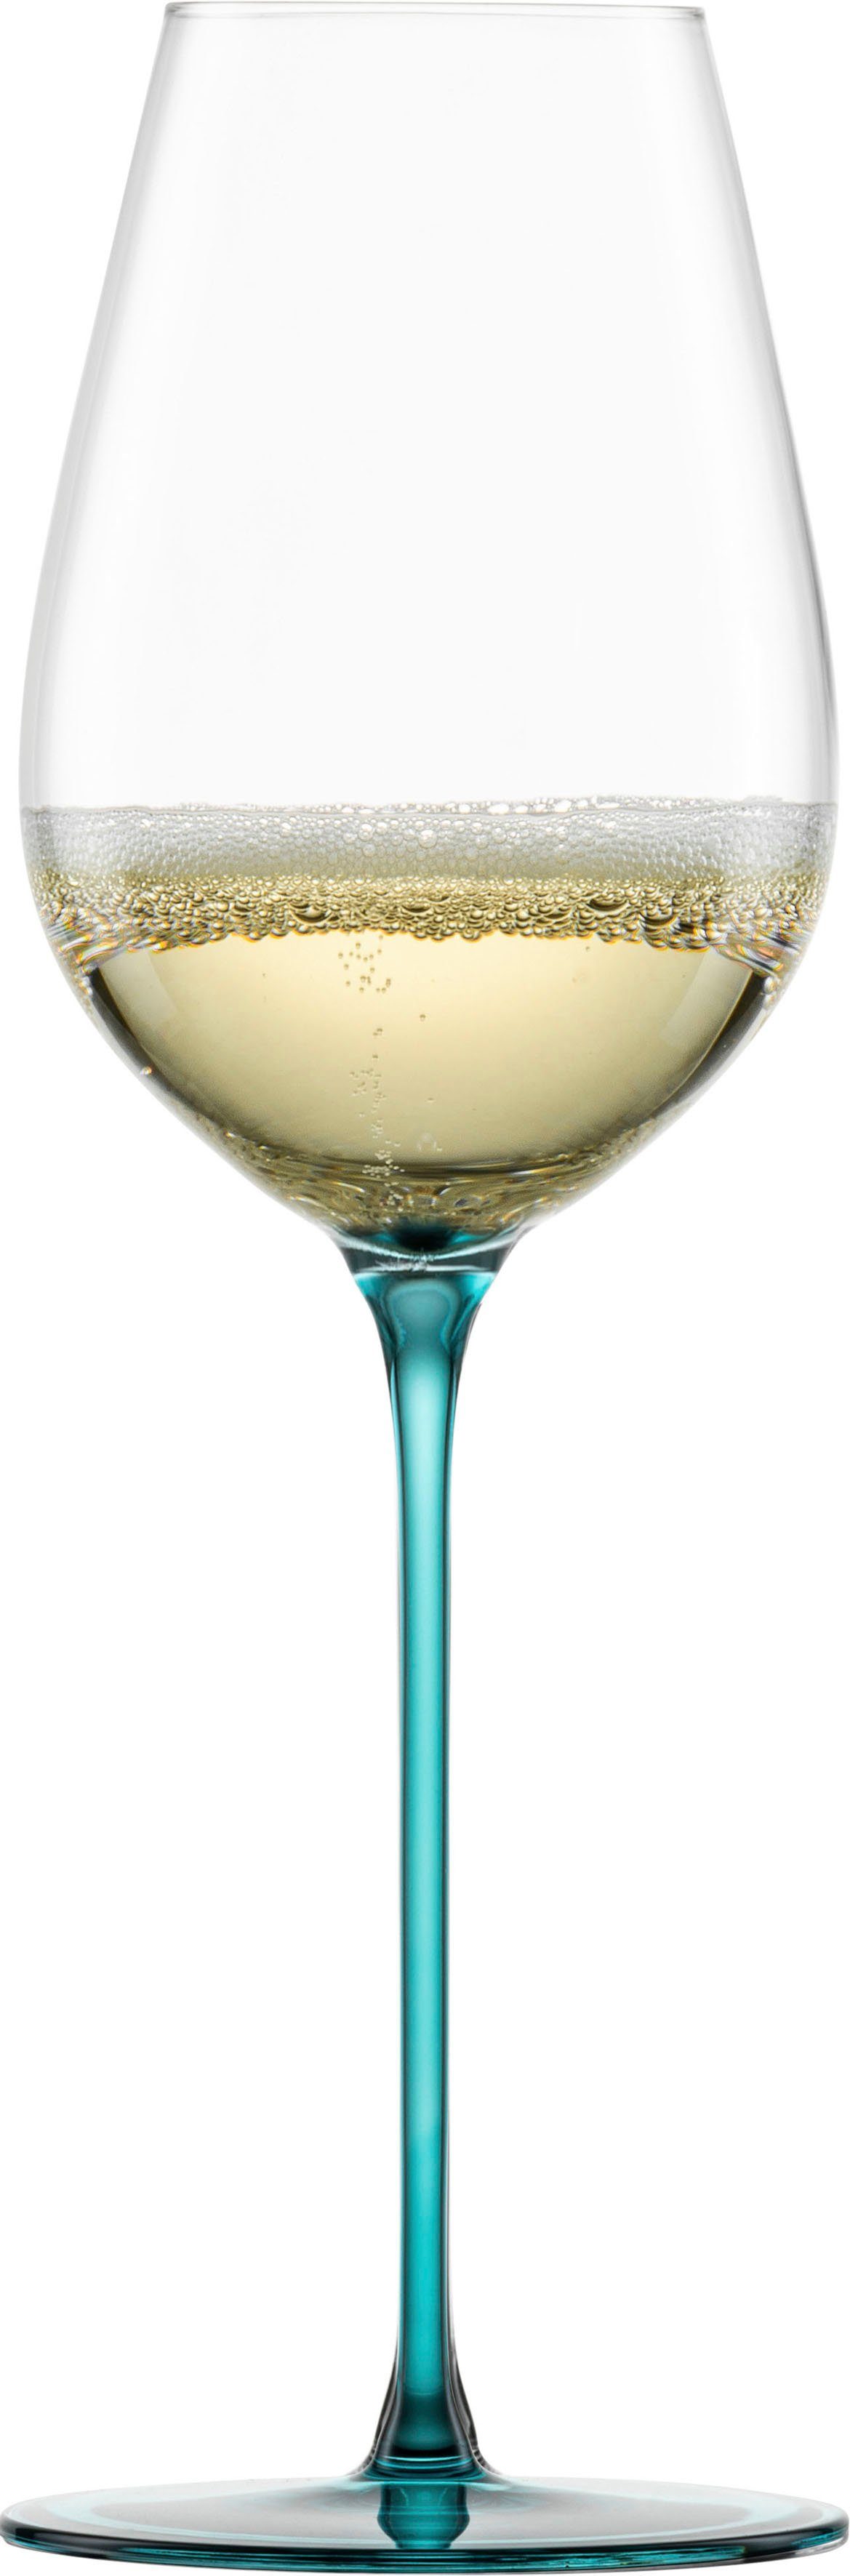 Eisch Champagnerglas erfolgt die 2-teilig INSPIRE der ml, Veredelung Stiele SENSISPLUS, in Kristallglas, Handarbeit, 400